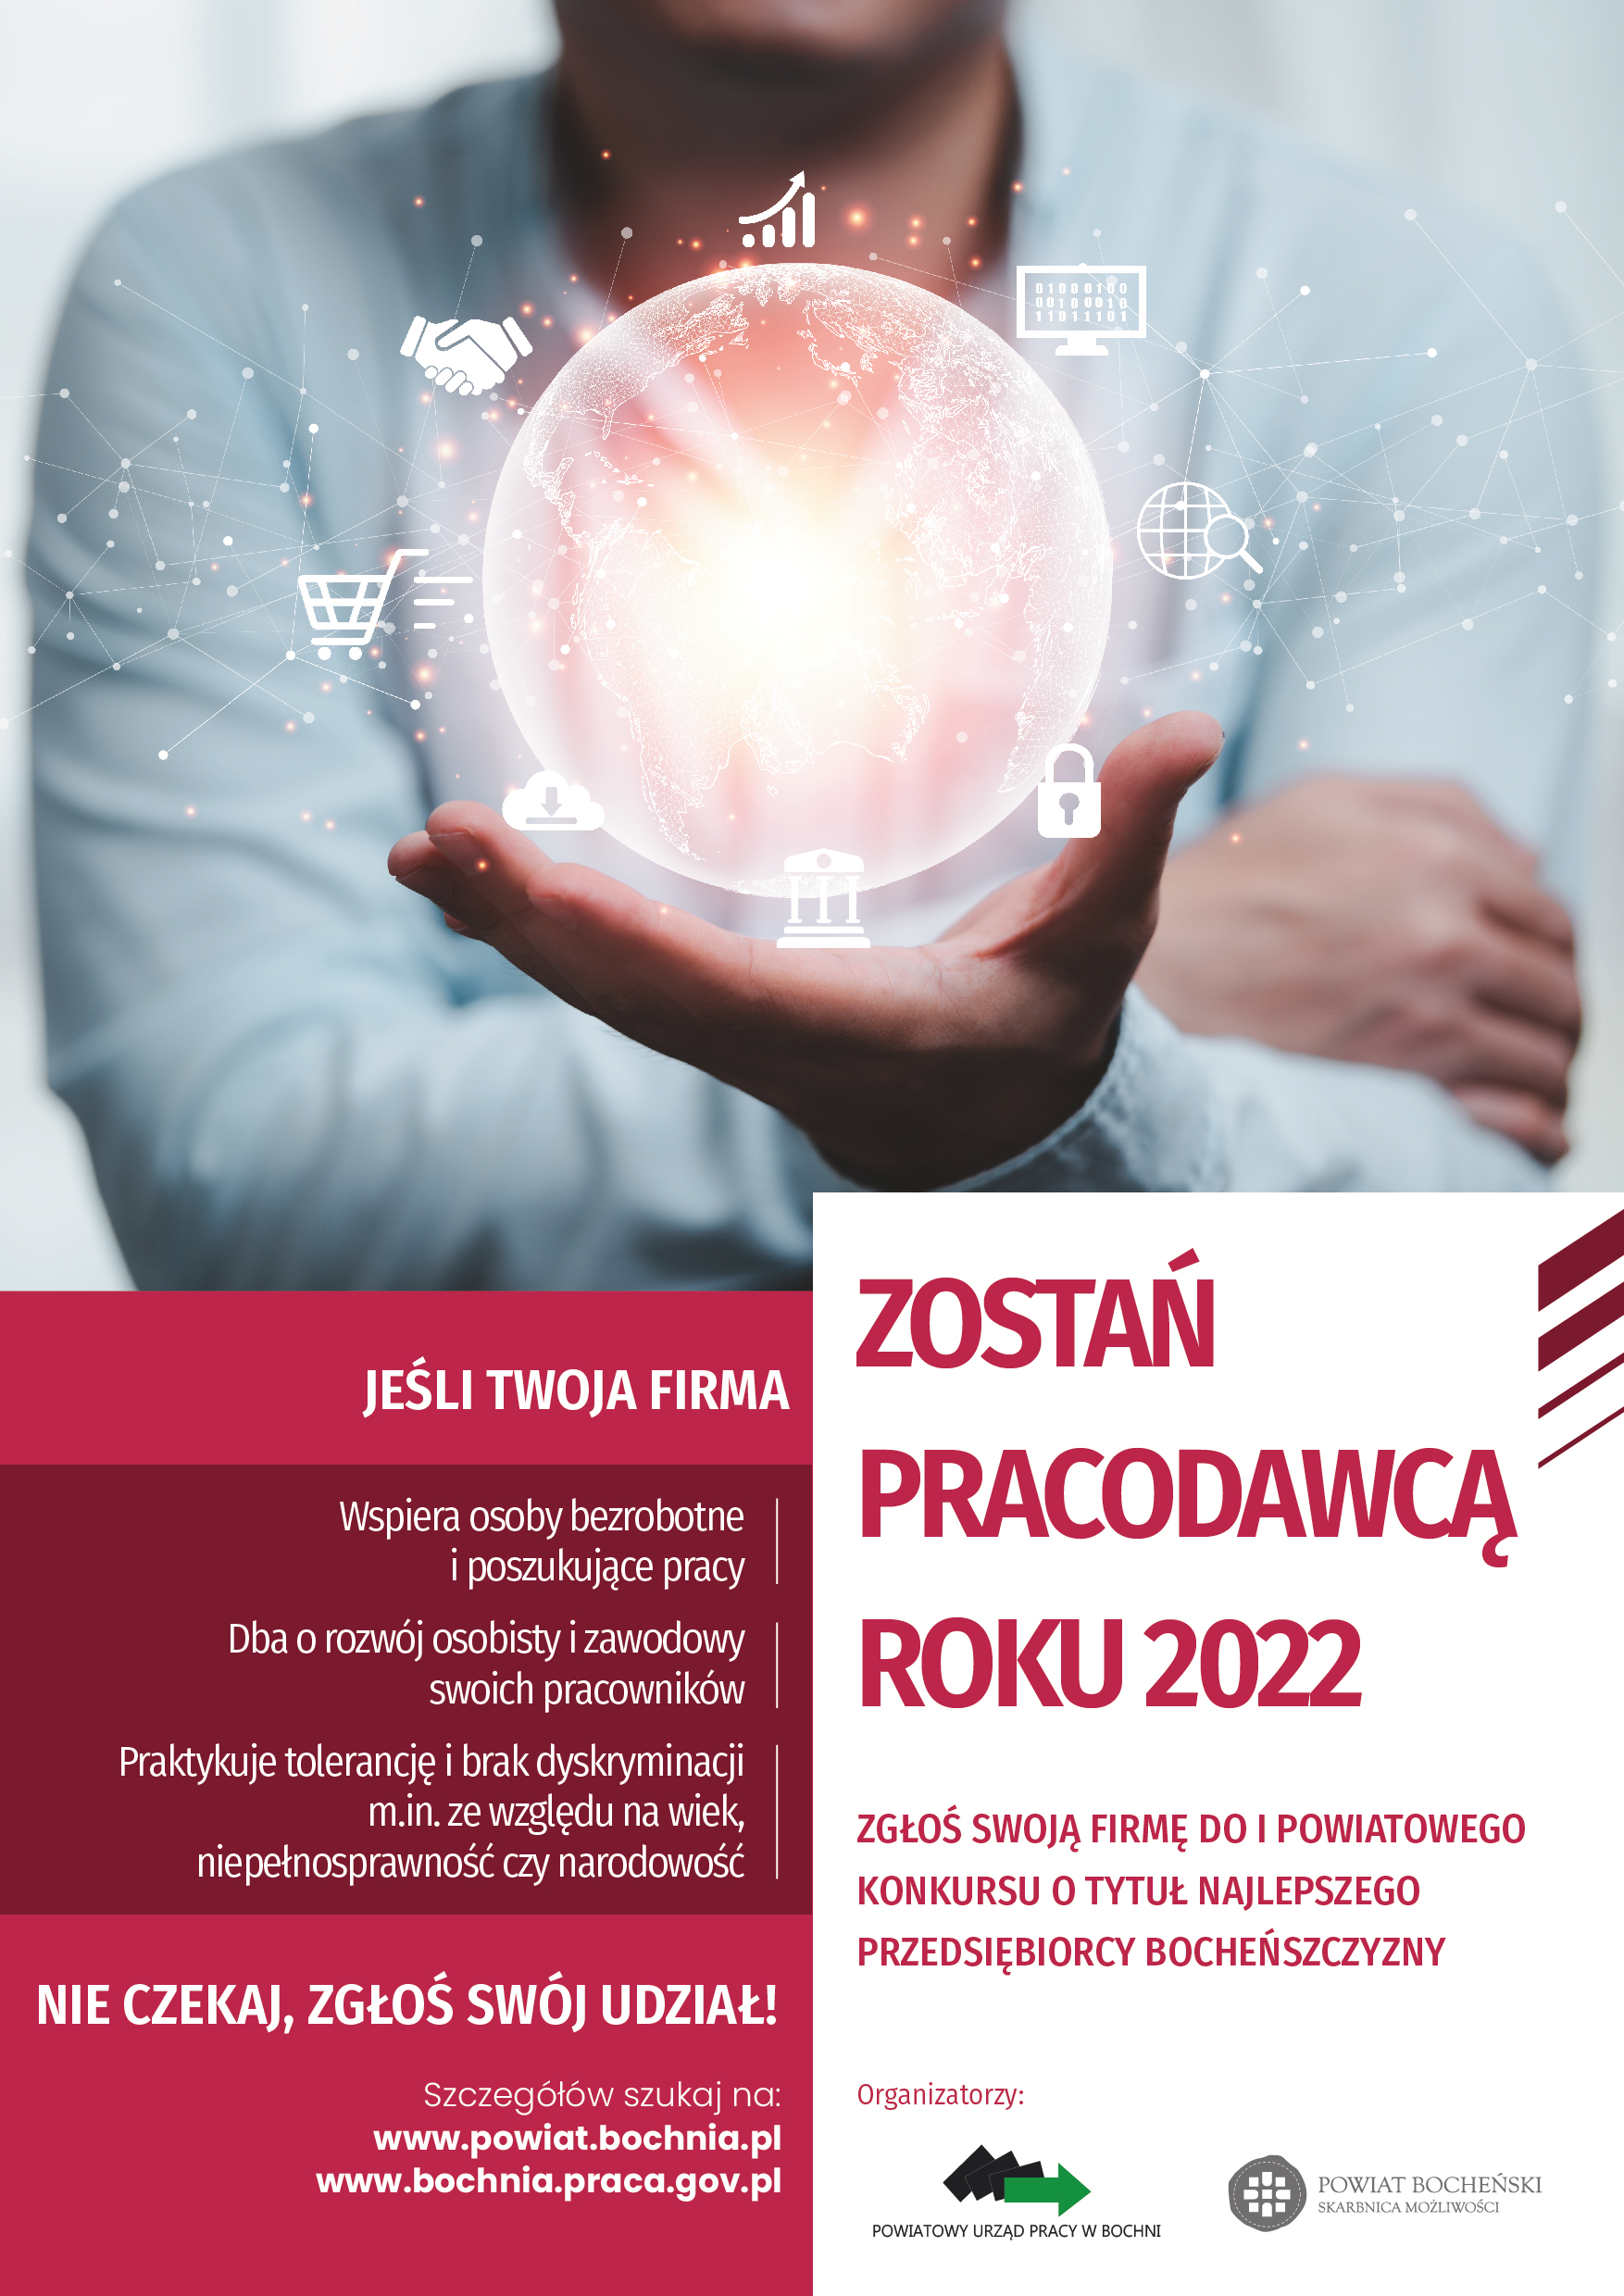 Zostań Pracodawcą Roku 2022 - plakat promocyjny